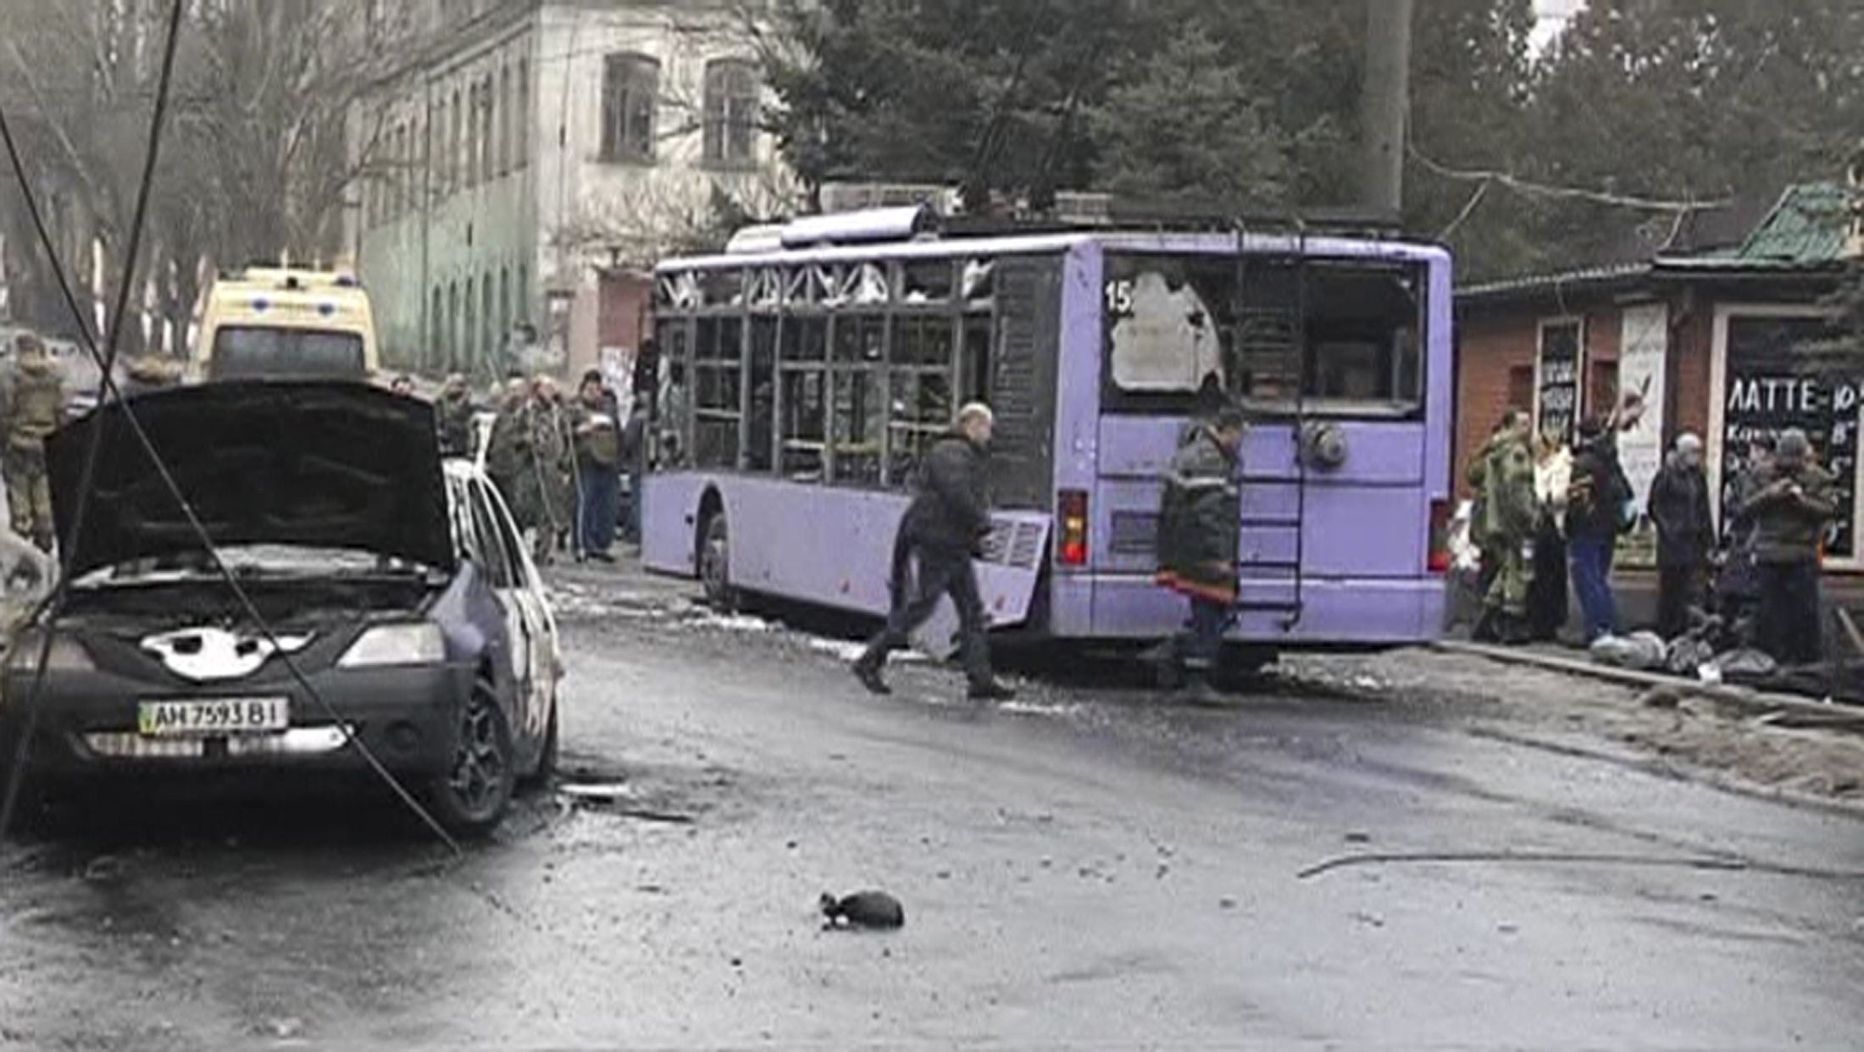 22 января в ходе обстрела Донецка снаряд попал в троллейбусную остановку, убив около десяти человек.